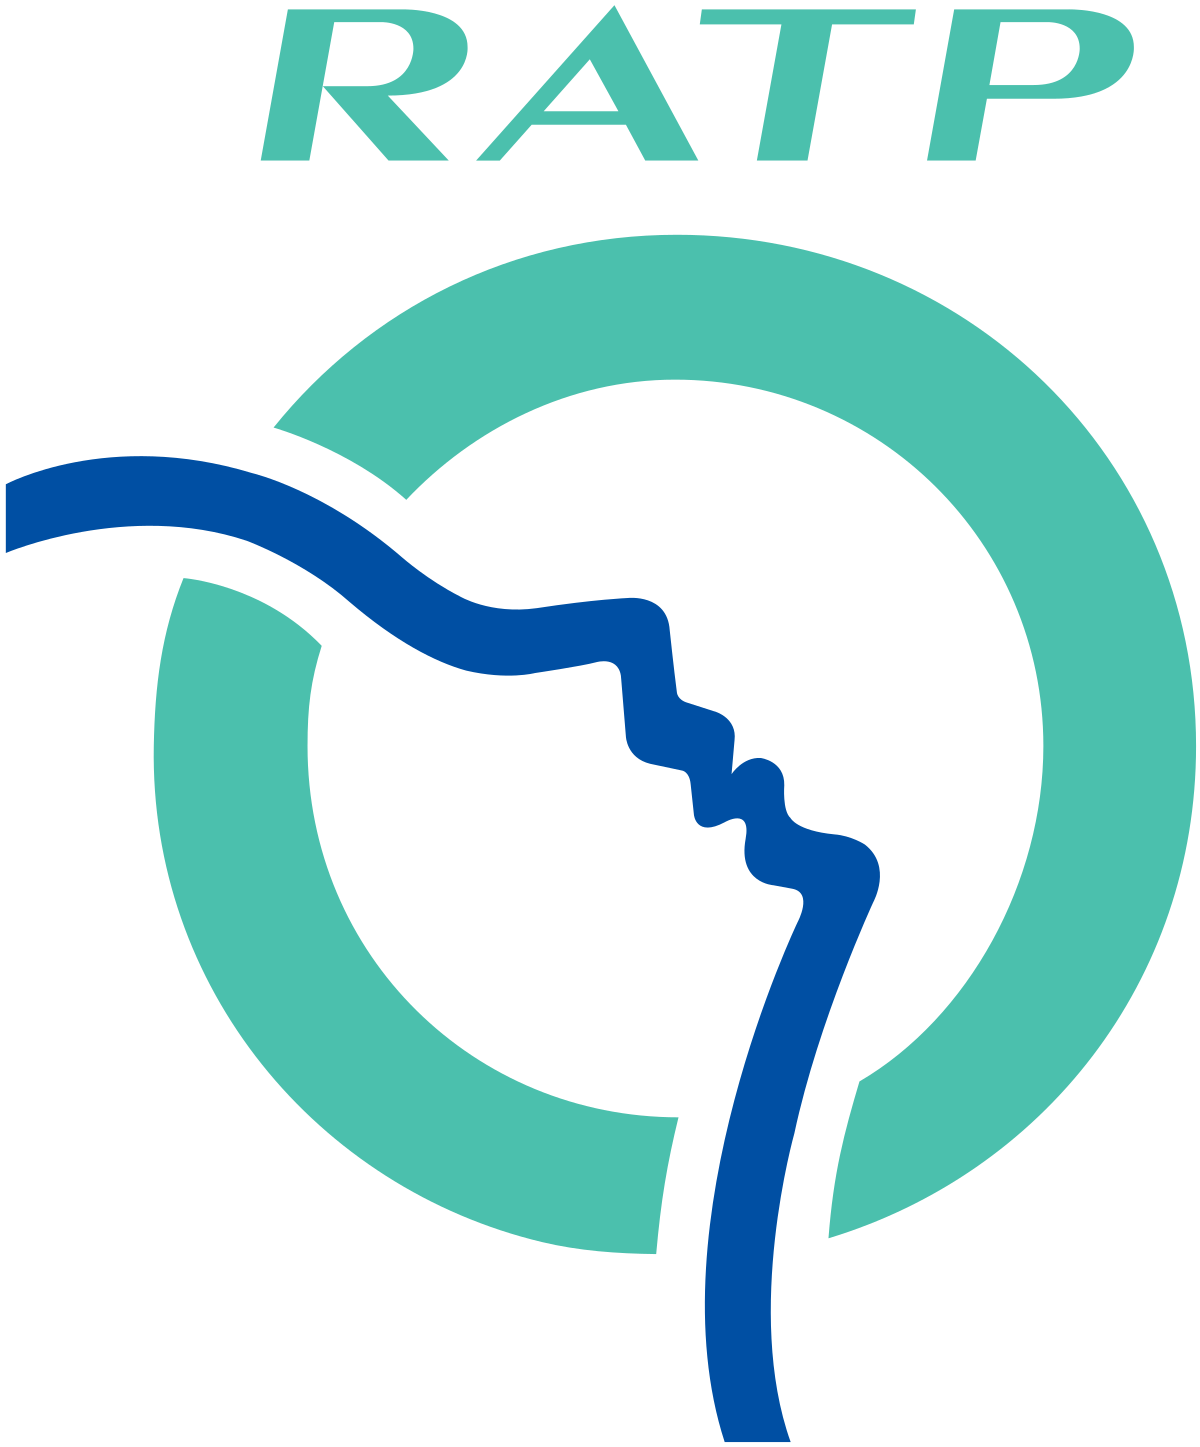 RATP-logo-png